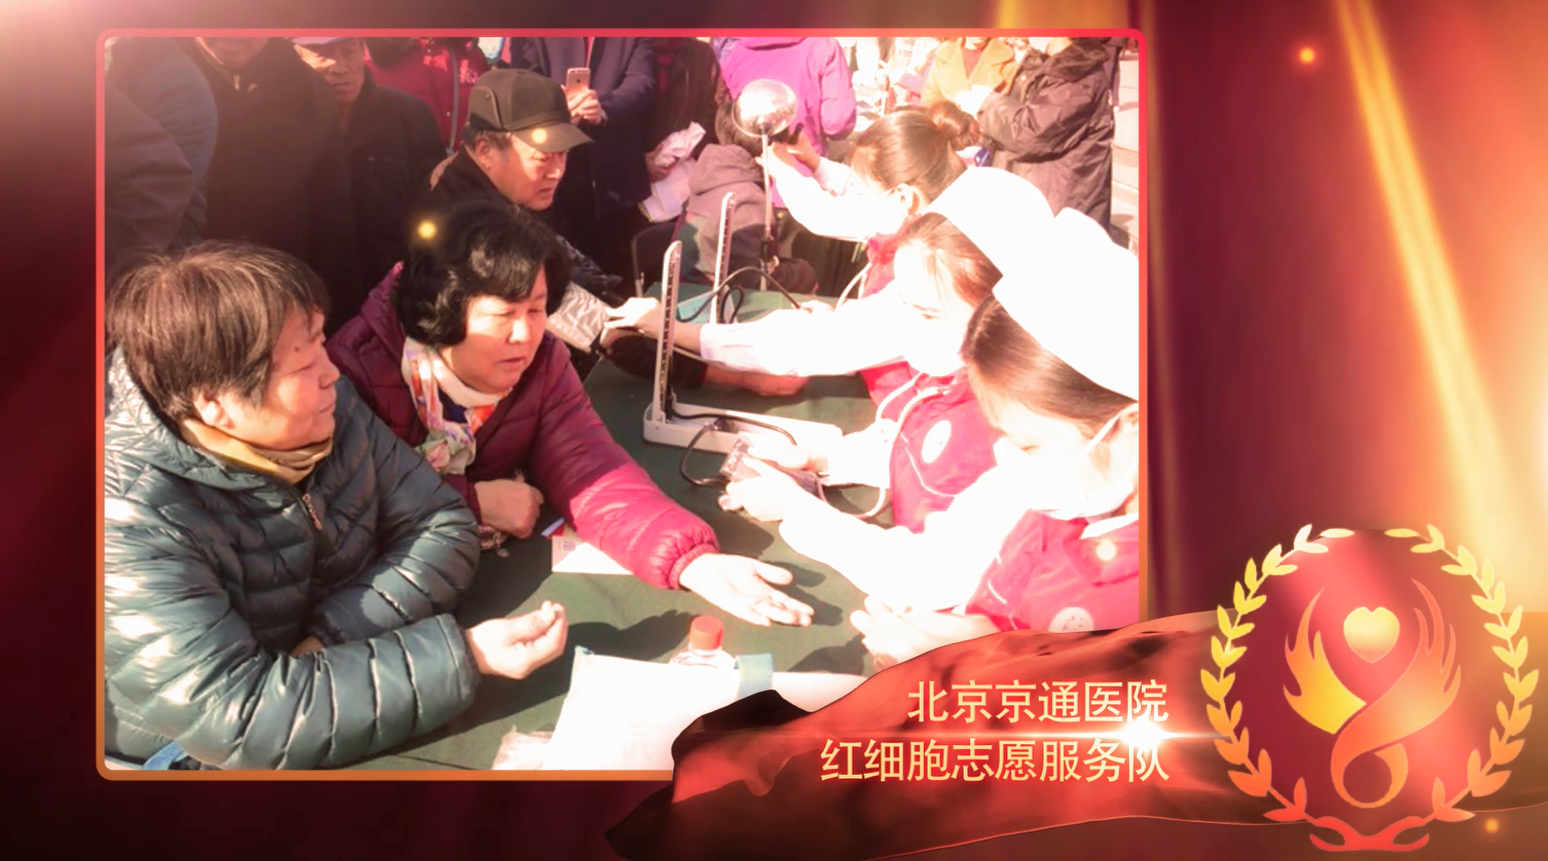 北京京通医院红细胞志愿服务队